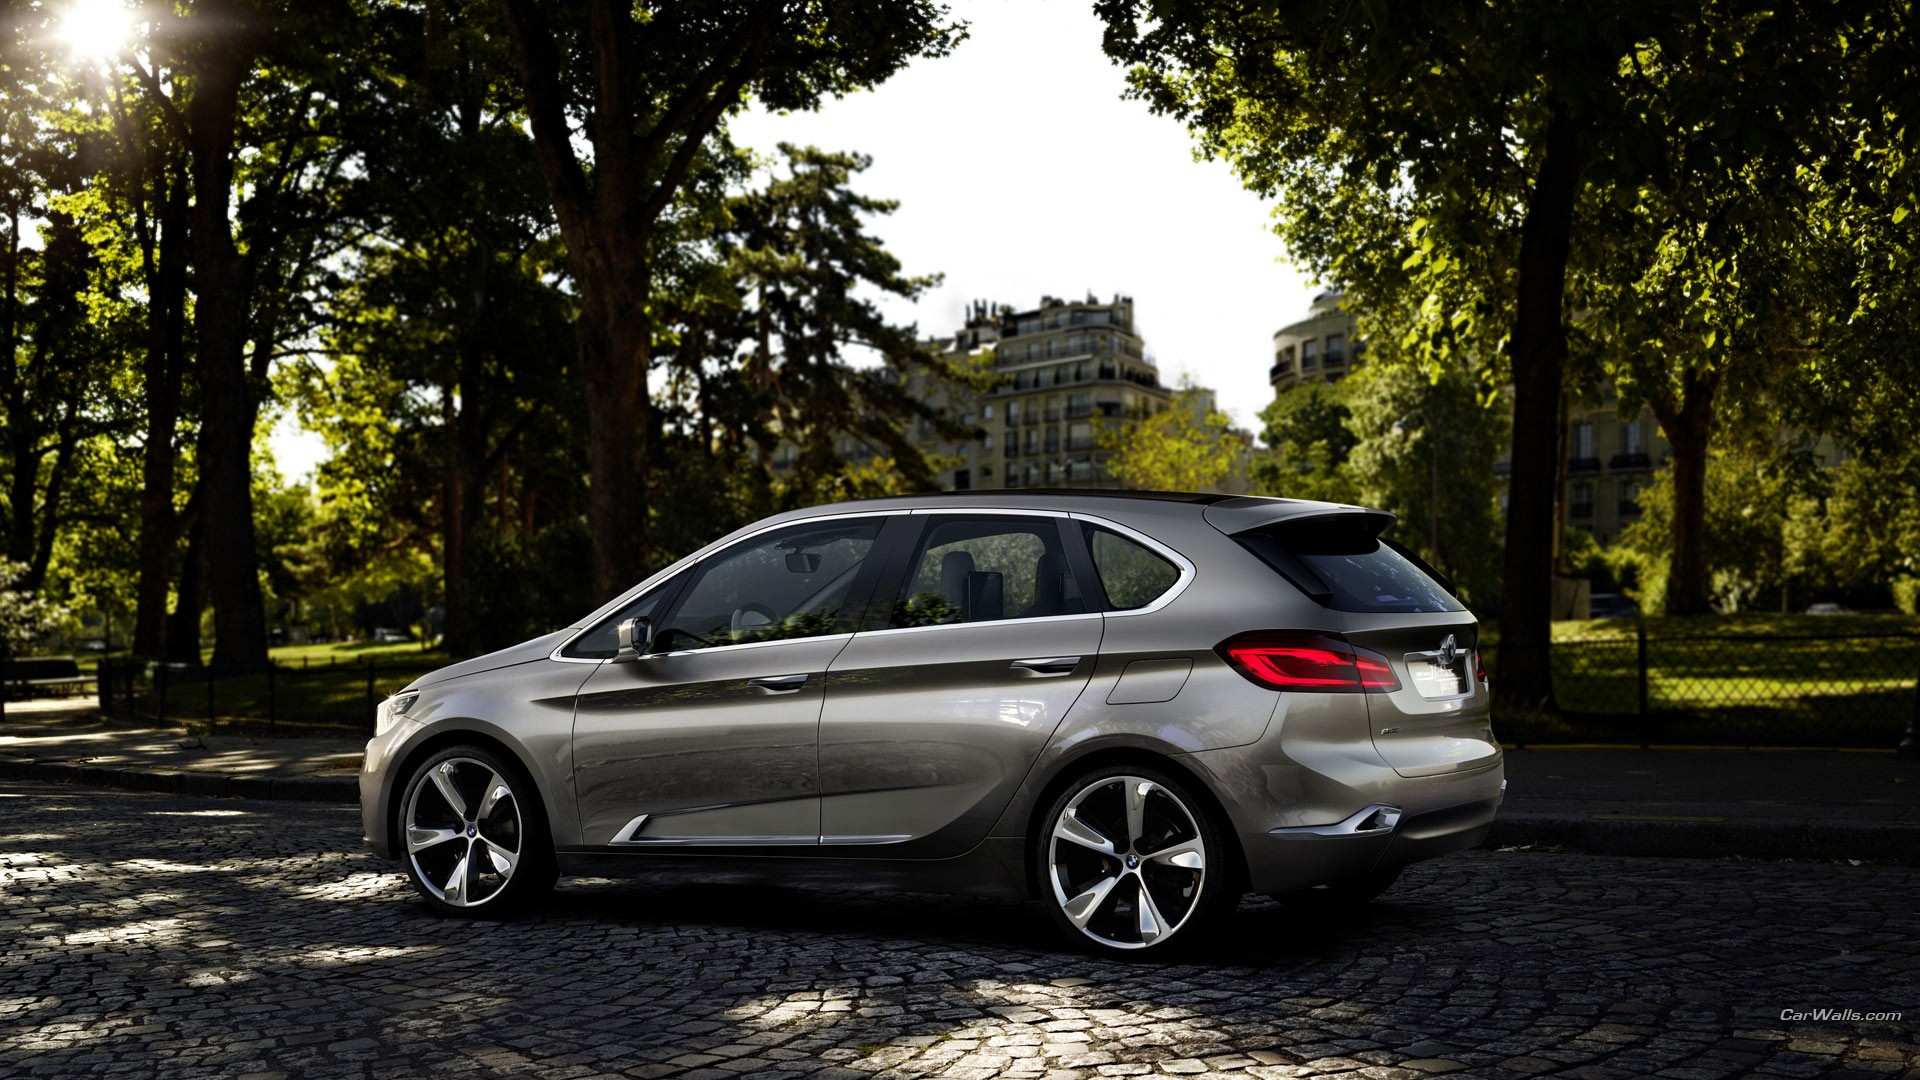 BMW Active, Concept Cars, MPV, Car Wallpaper